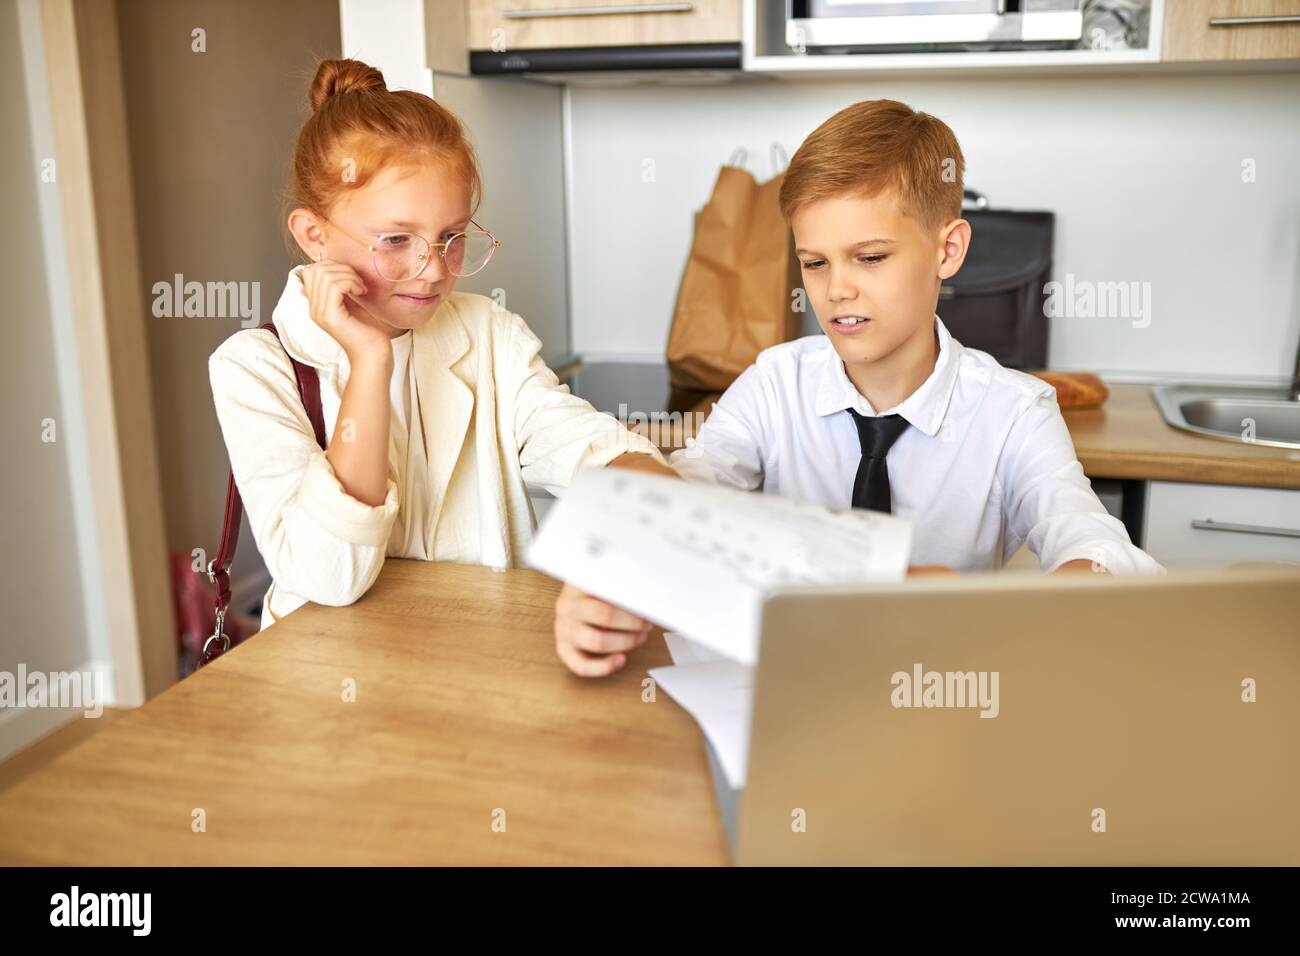 de beaux enfants de couples caucasiens travaillent ensemble sur un ordinateur portable, résolvent des problèmes de famille, paient des factures en ligne, parlent. à la maison, ils se comportent comme des adultes Banque D'Images